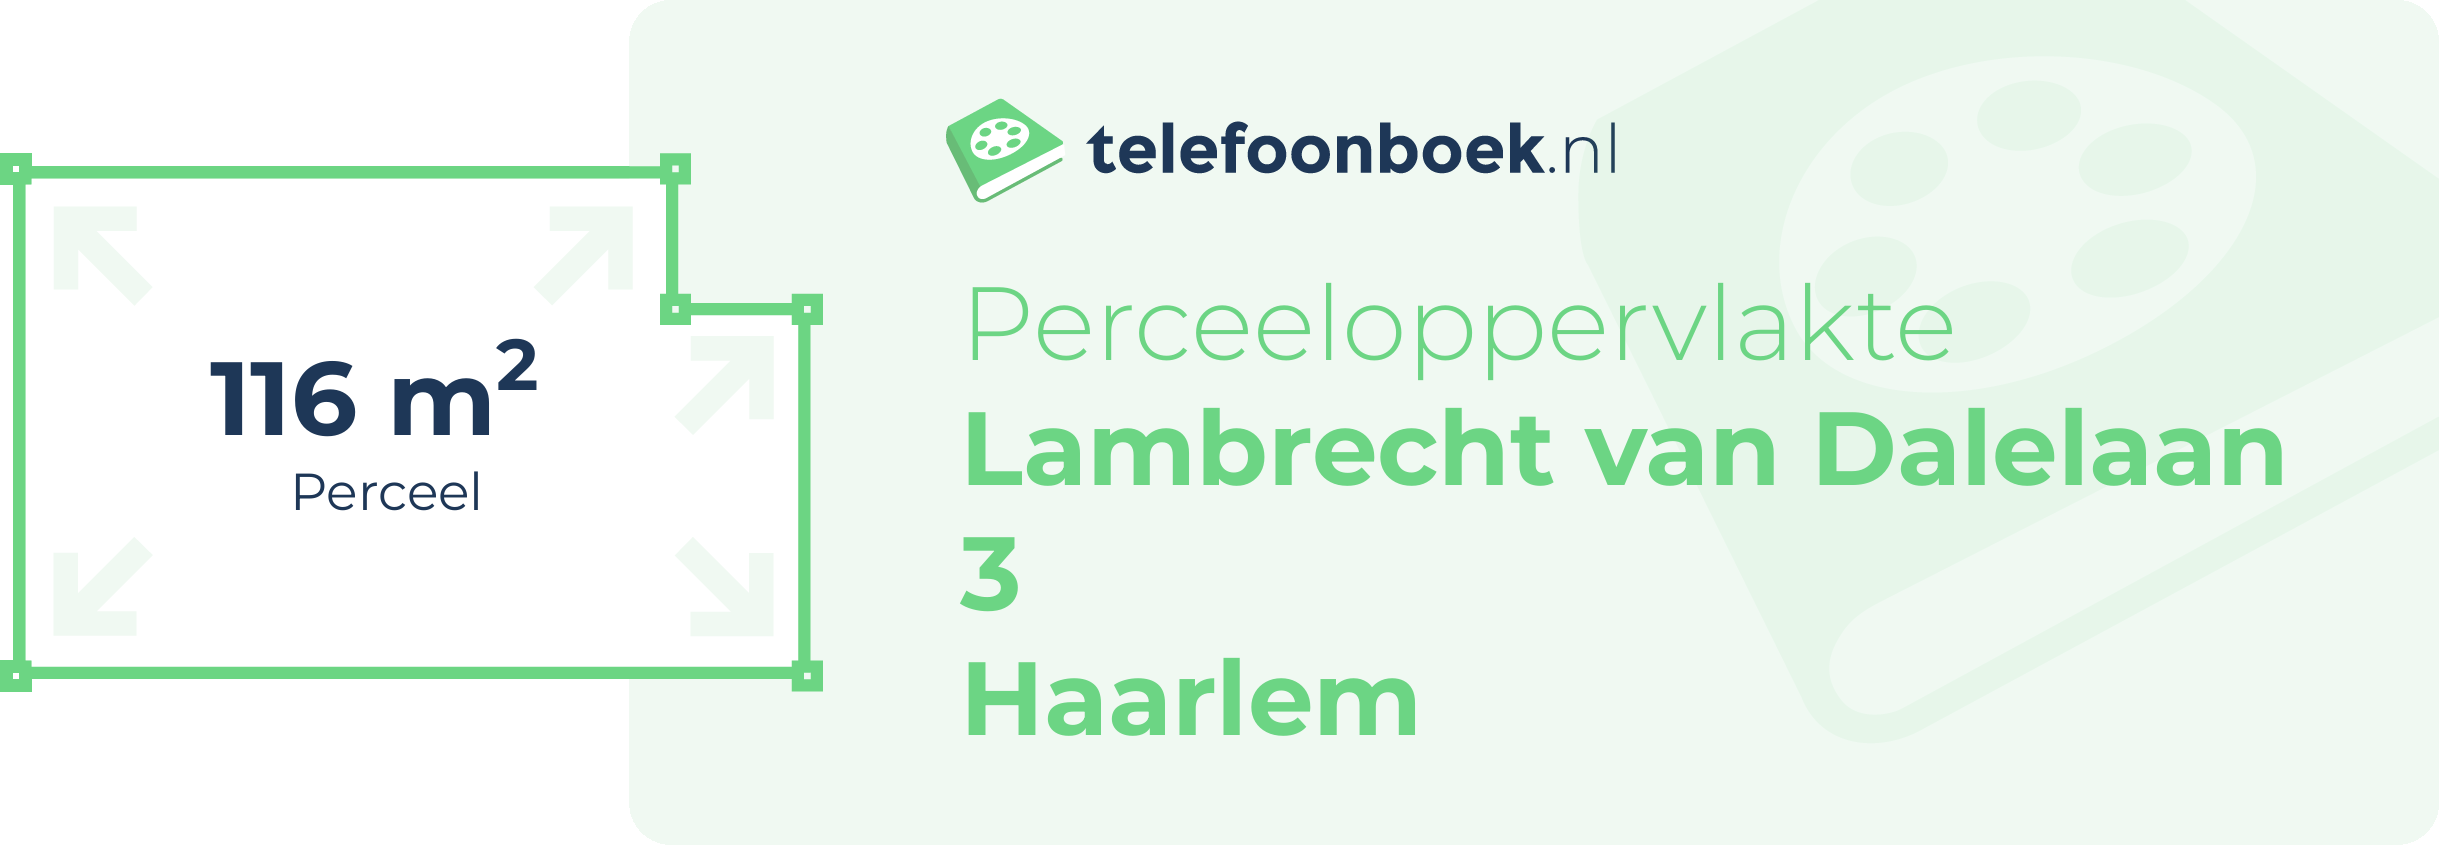 Perceeloppervlakte Lambrecht Van Dalelaan 3 Haarlem